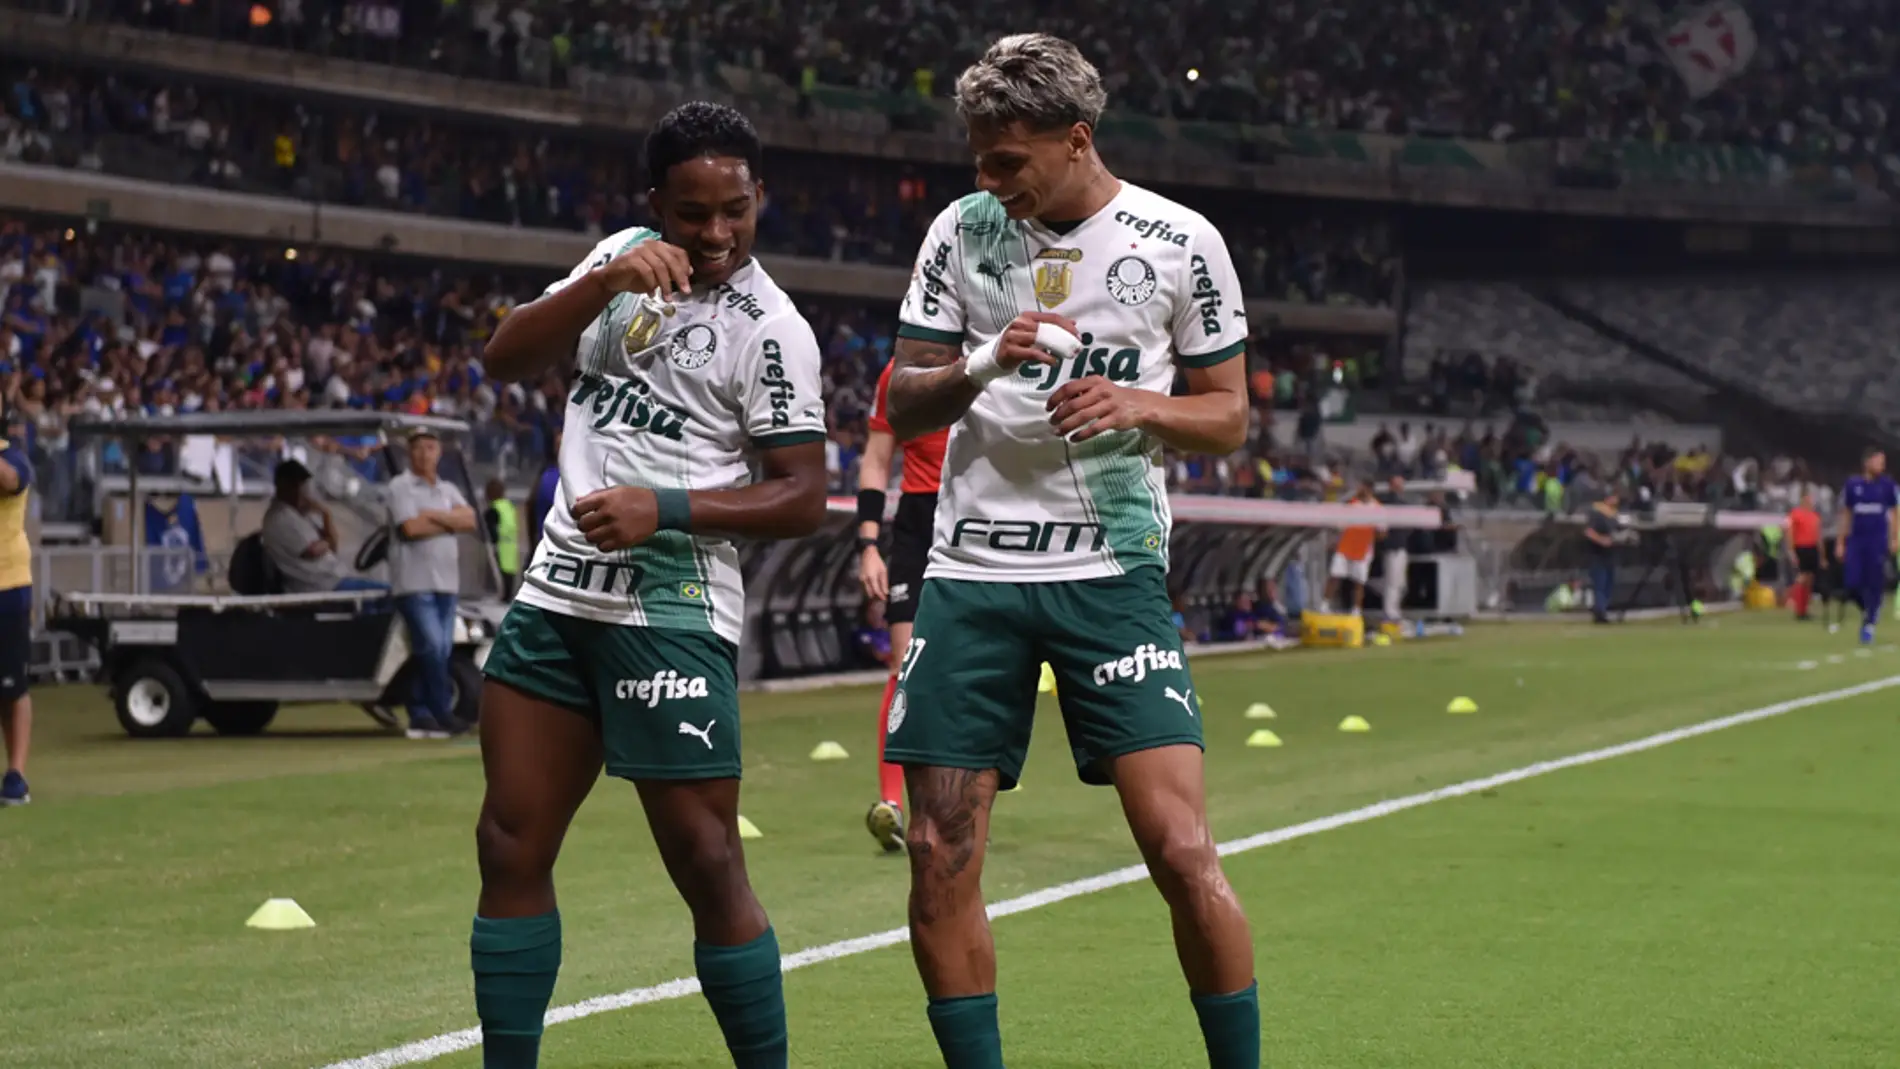 El madridista Endrick gana la liga brasileña con Palmeiras